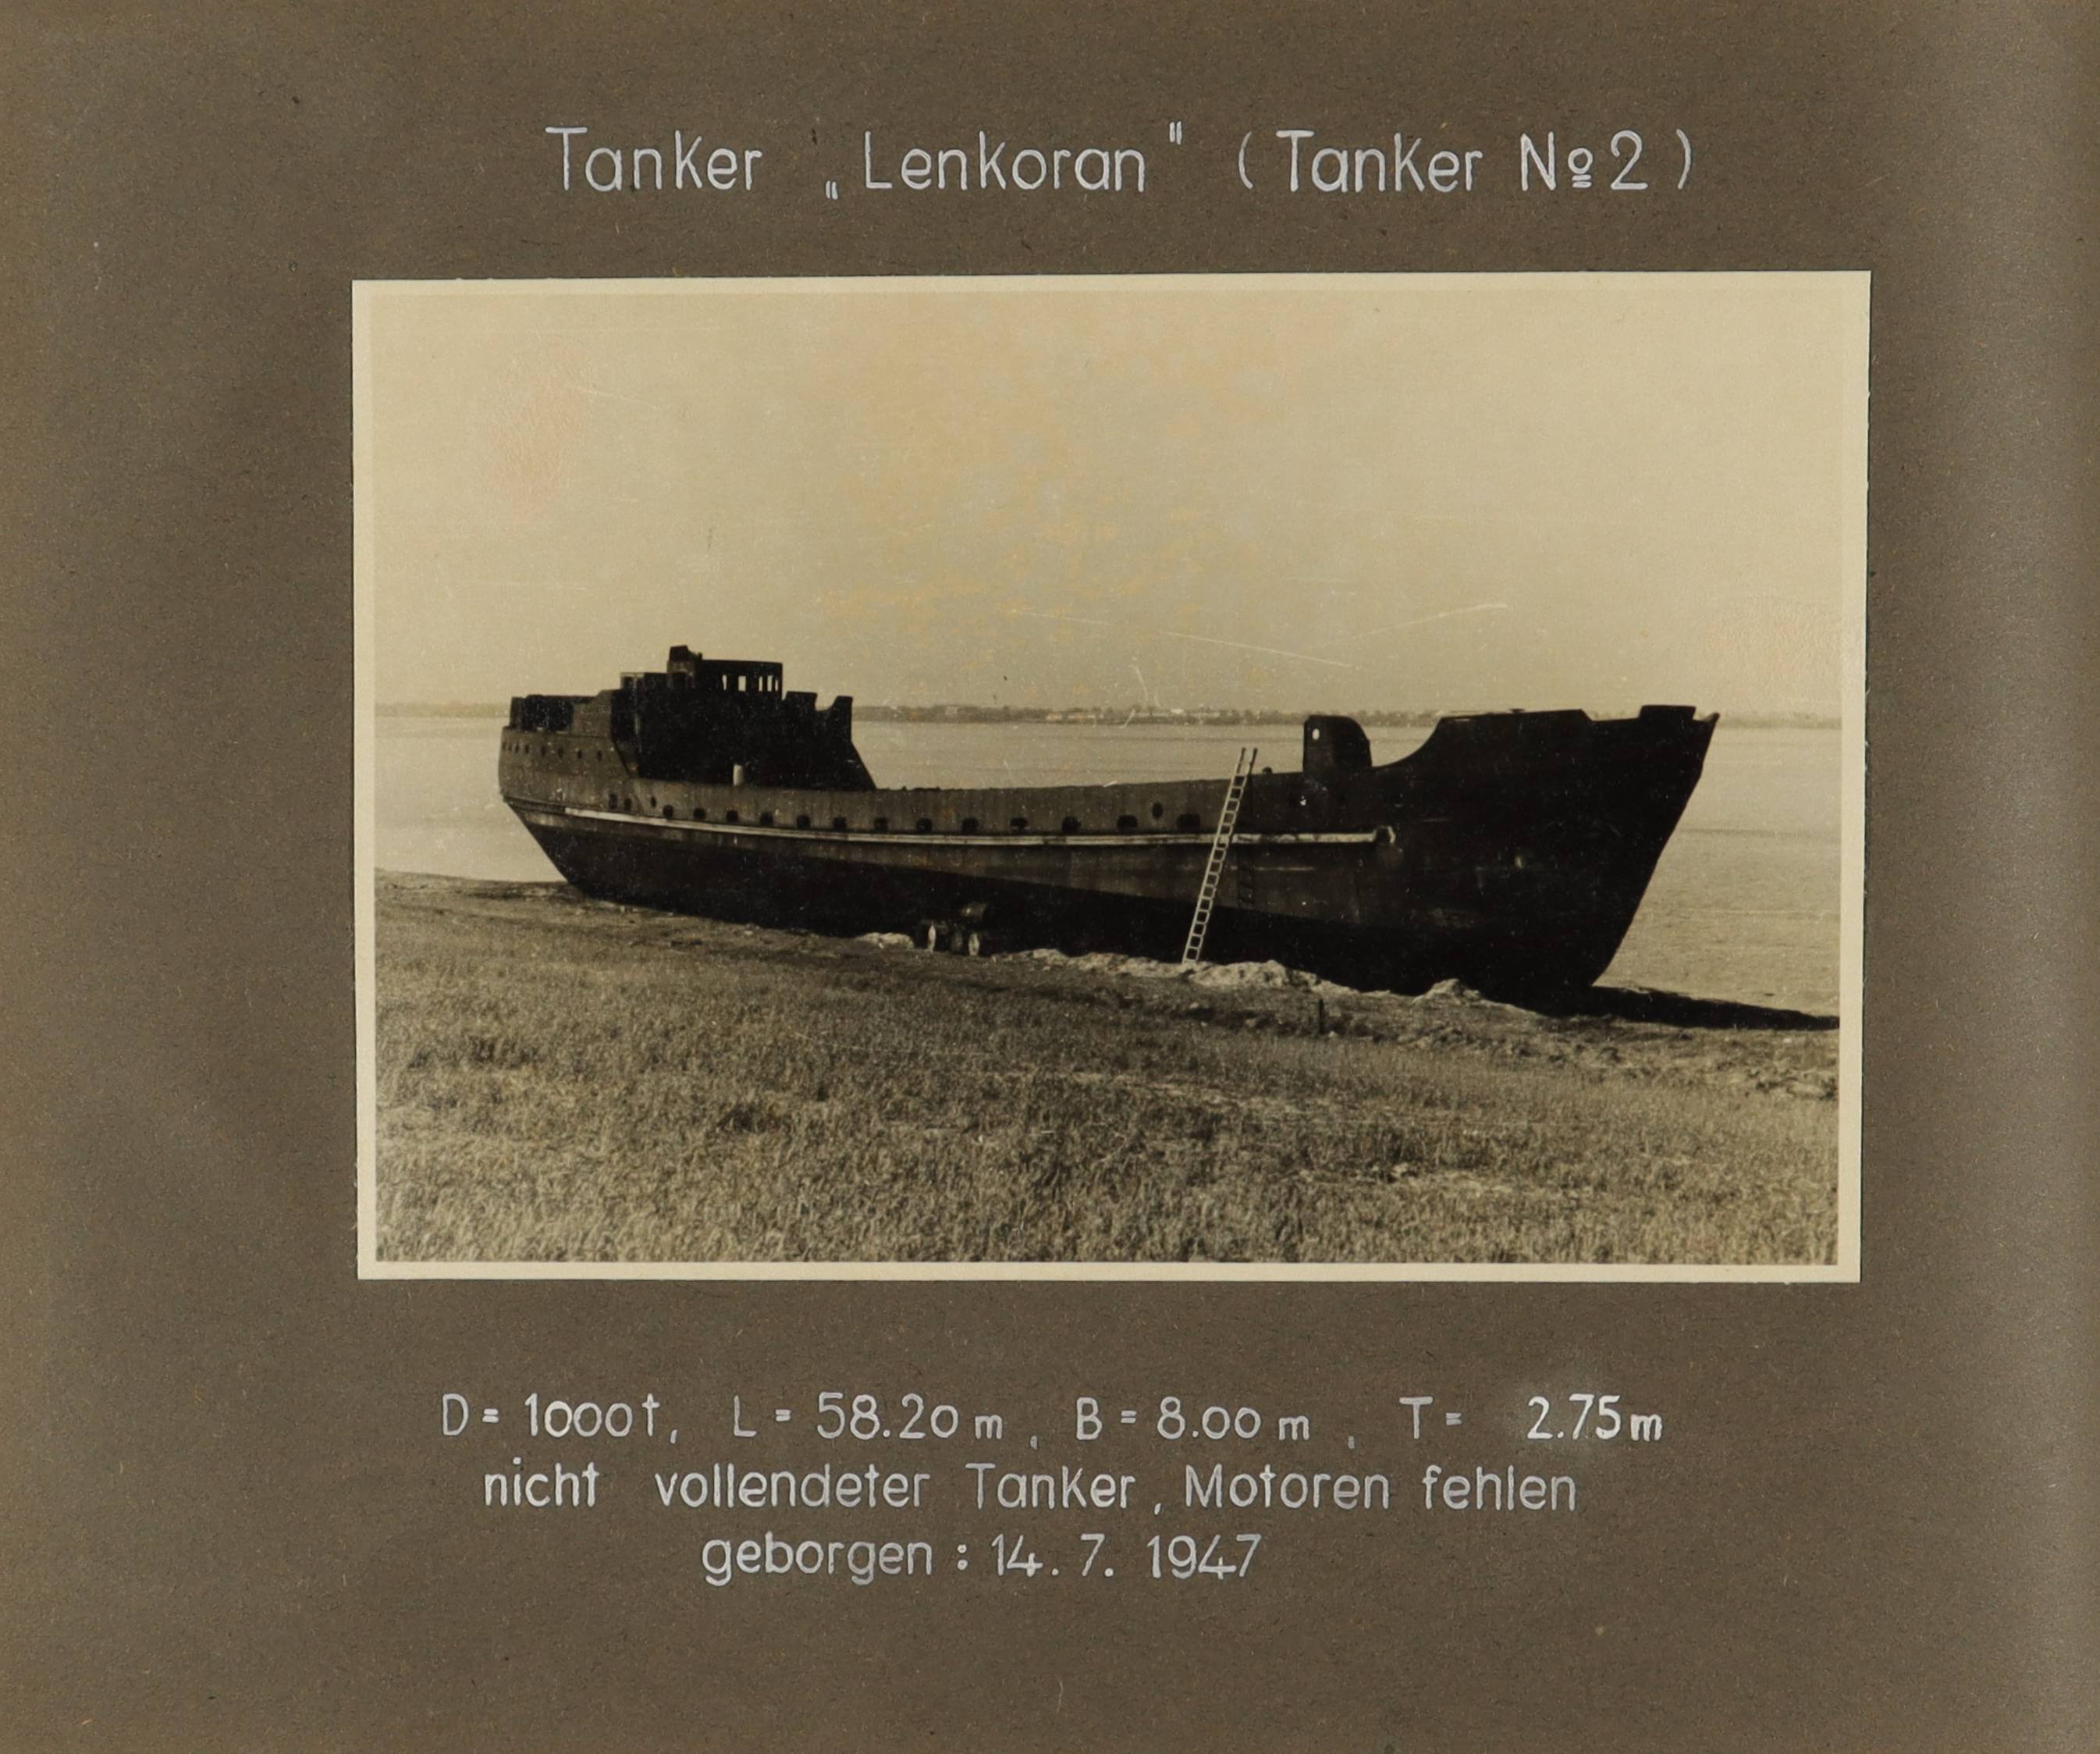 nicht vollendeter Tanker "Lenkoran" (Tanker Nr. 2) (Schiffbau- und Schiffahrtsmuseum Rostock RR-F)